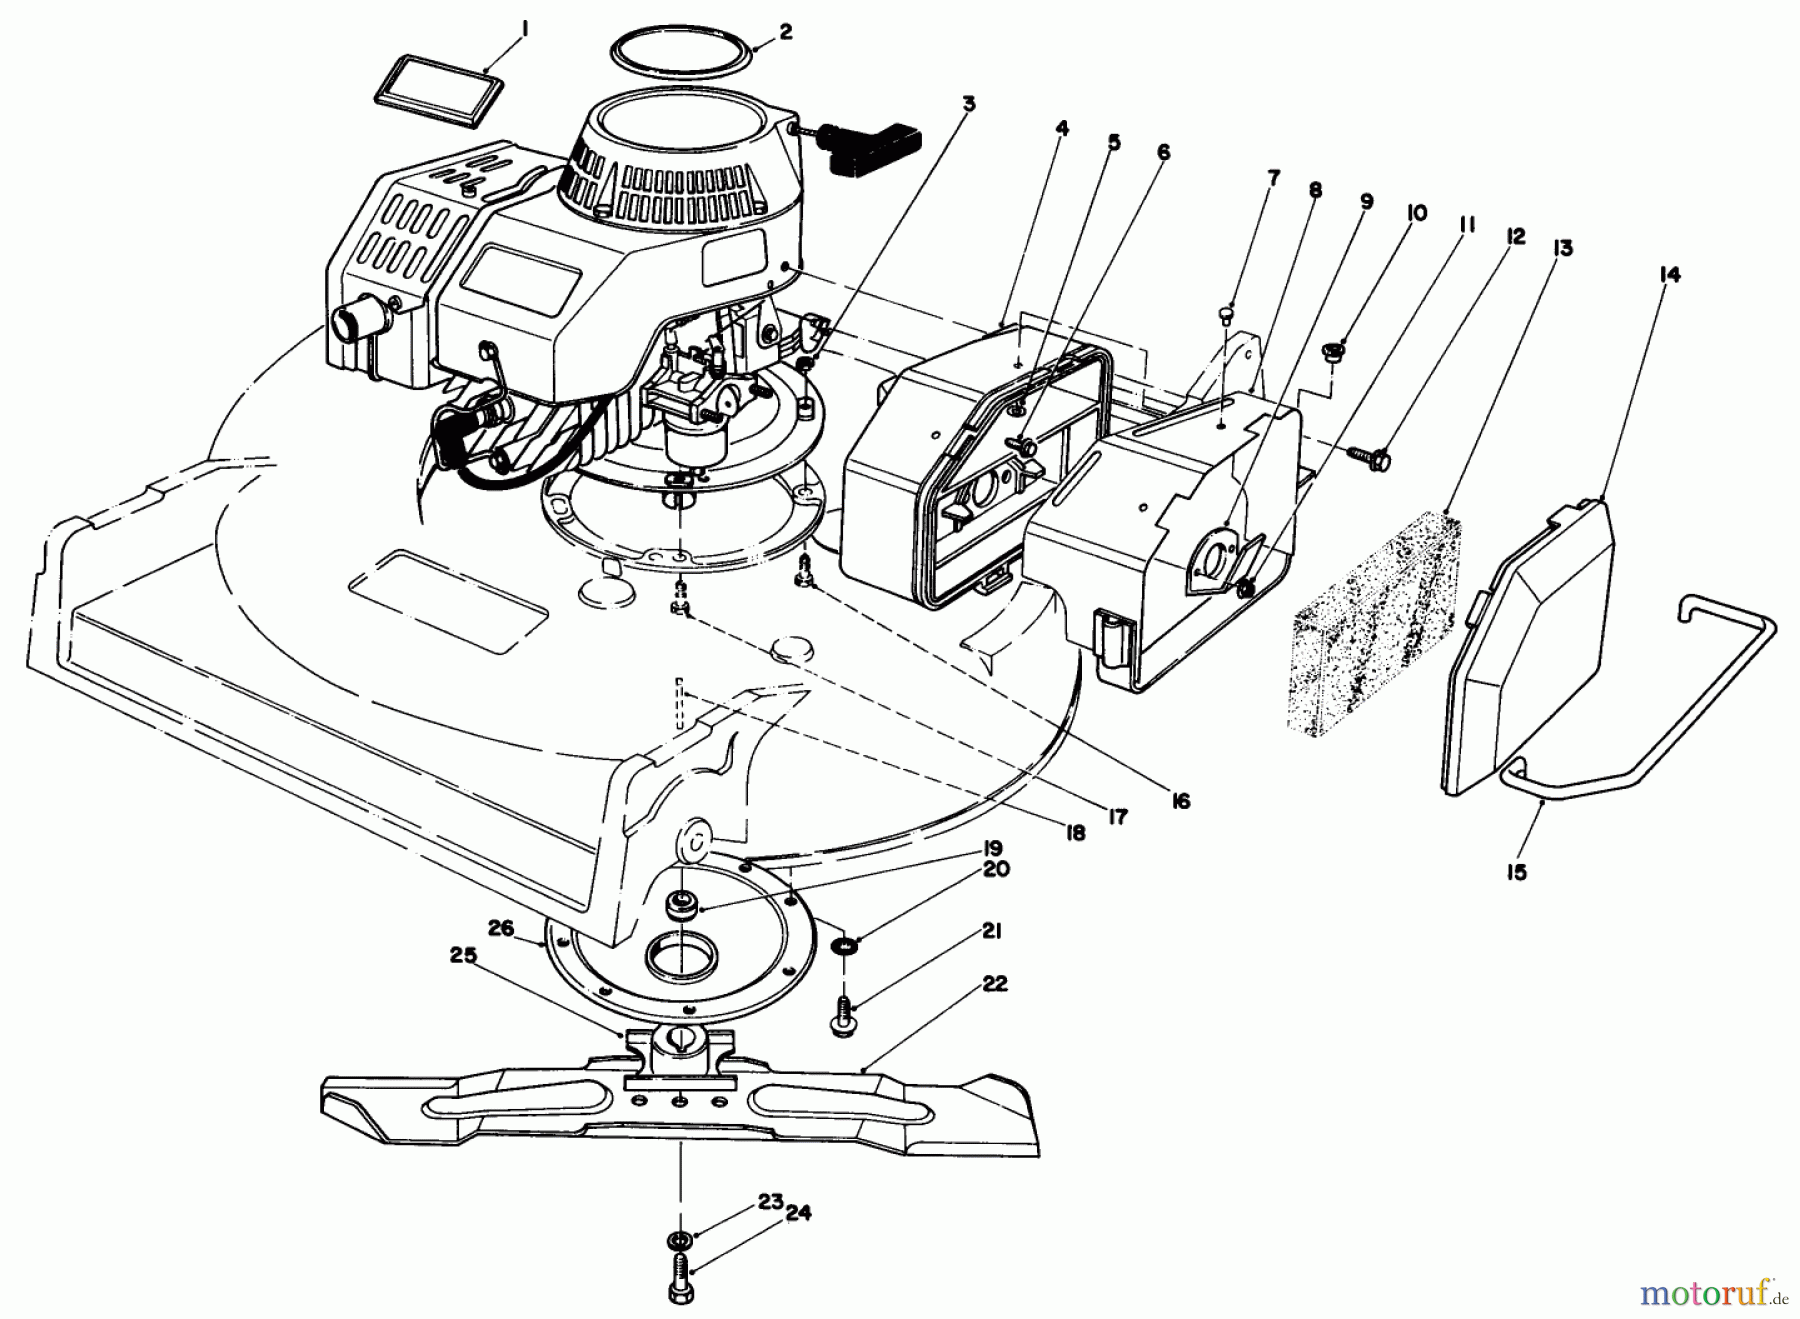  Toro Neu Mowers, Walk-Behind Seite 2 22030 - Toro Lawnmower, 1985 (5000001-5999999) ENGINE ASSEMBLY (MODEL 22030)